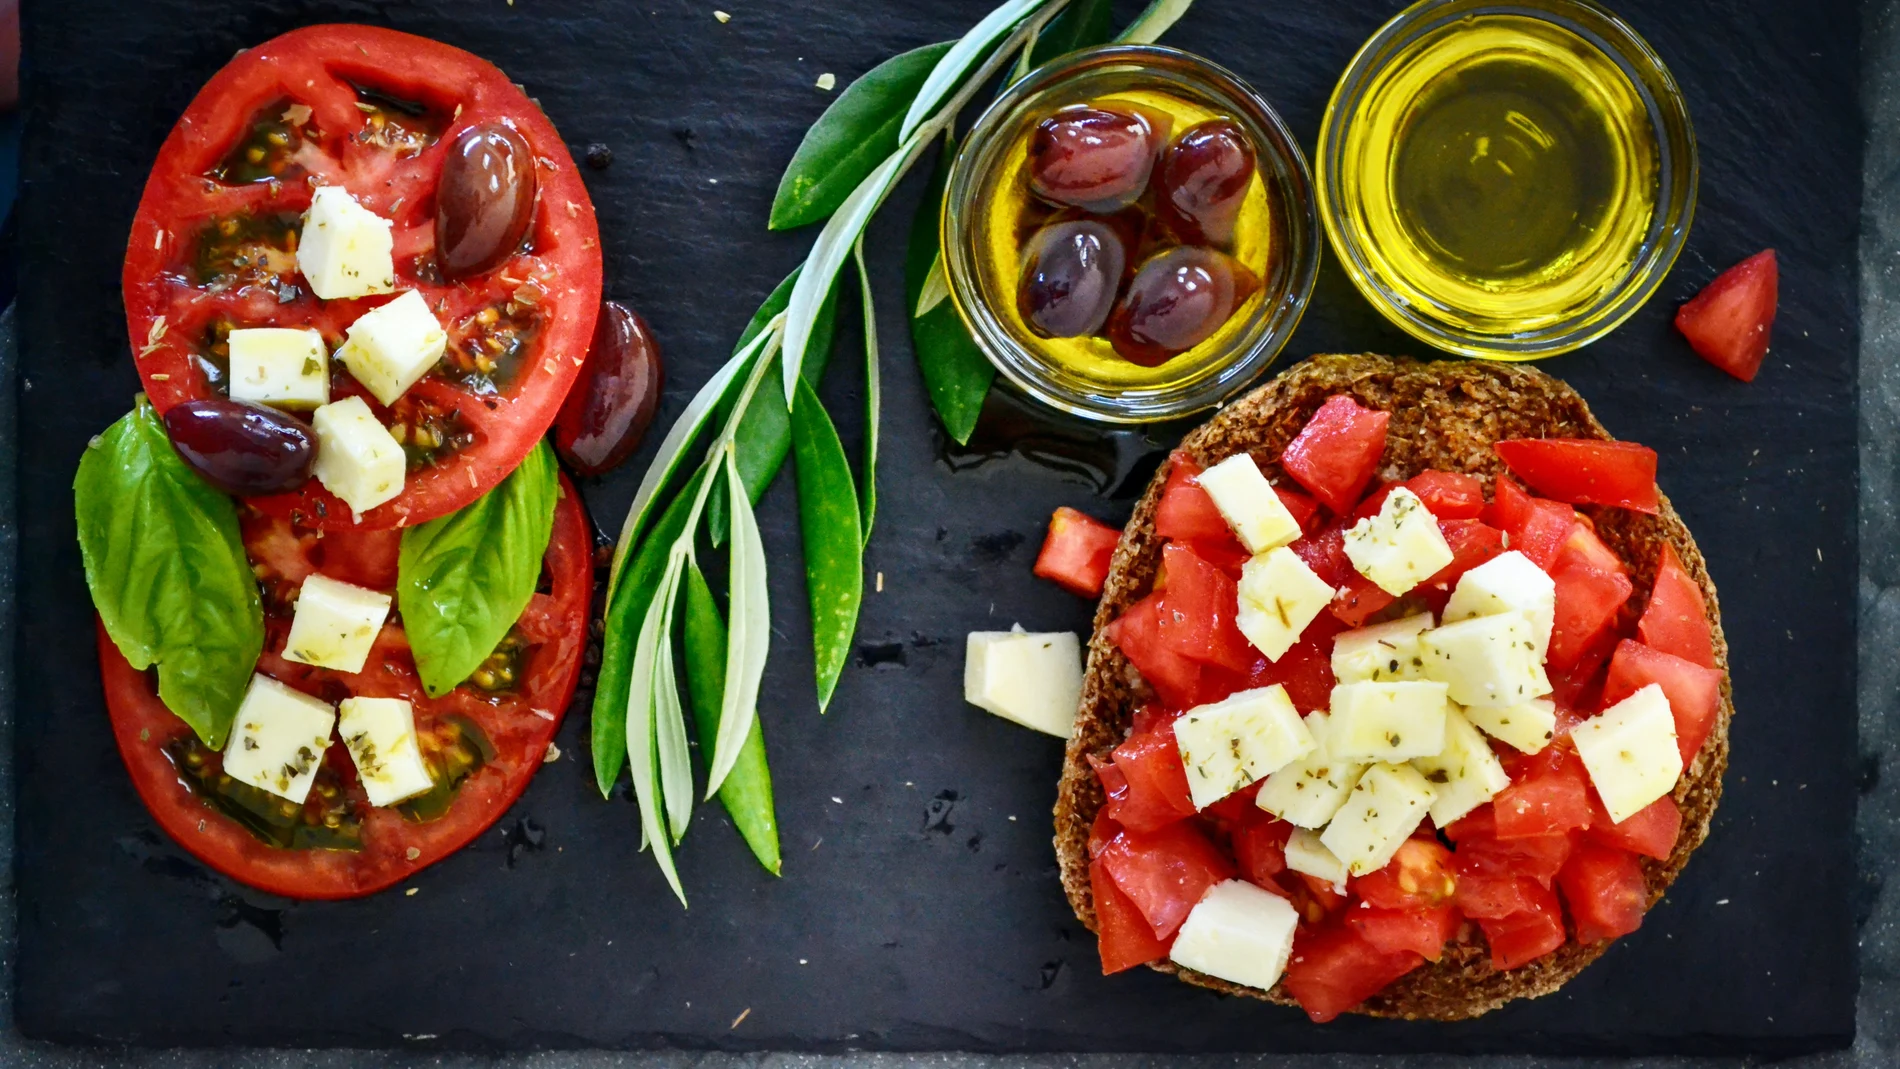 Qué es dieta mediterránea y qué no: estos son los alimentos que la componen 